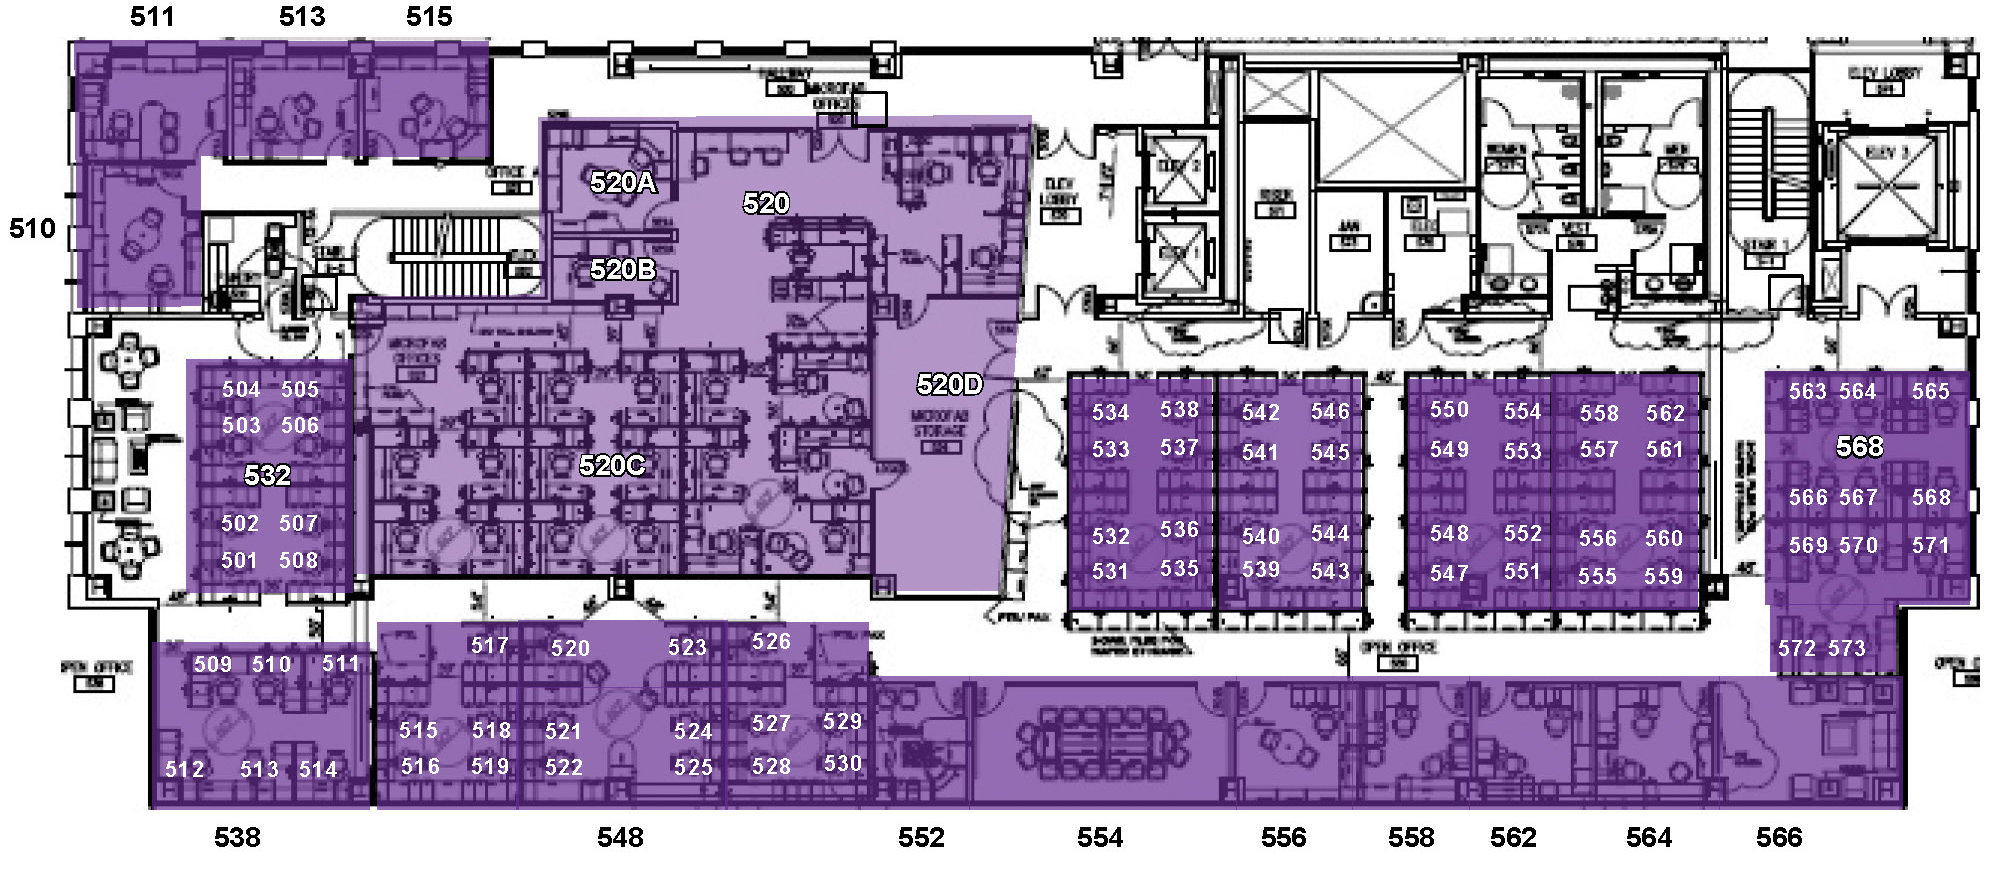 Sutardja Dai Hall fifth floor floorplan with desk numbers